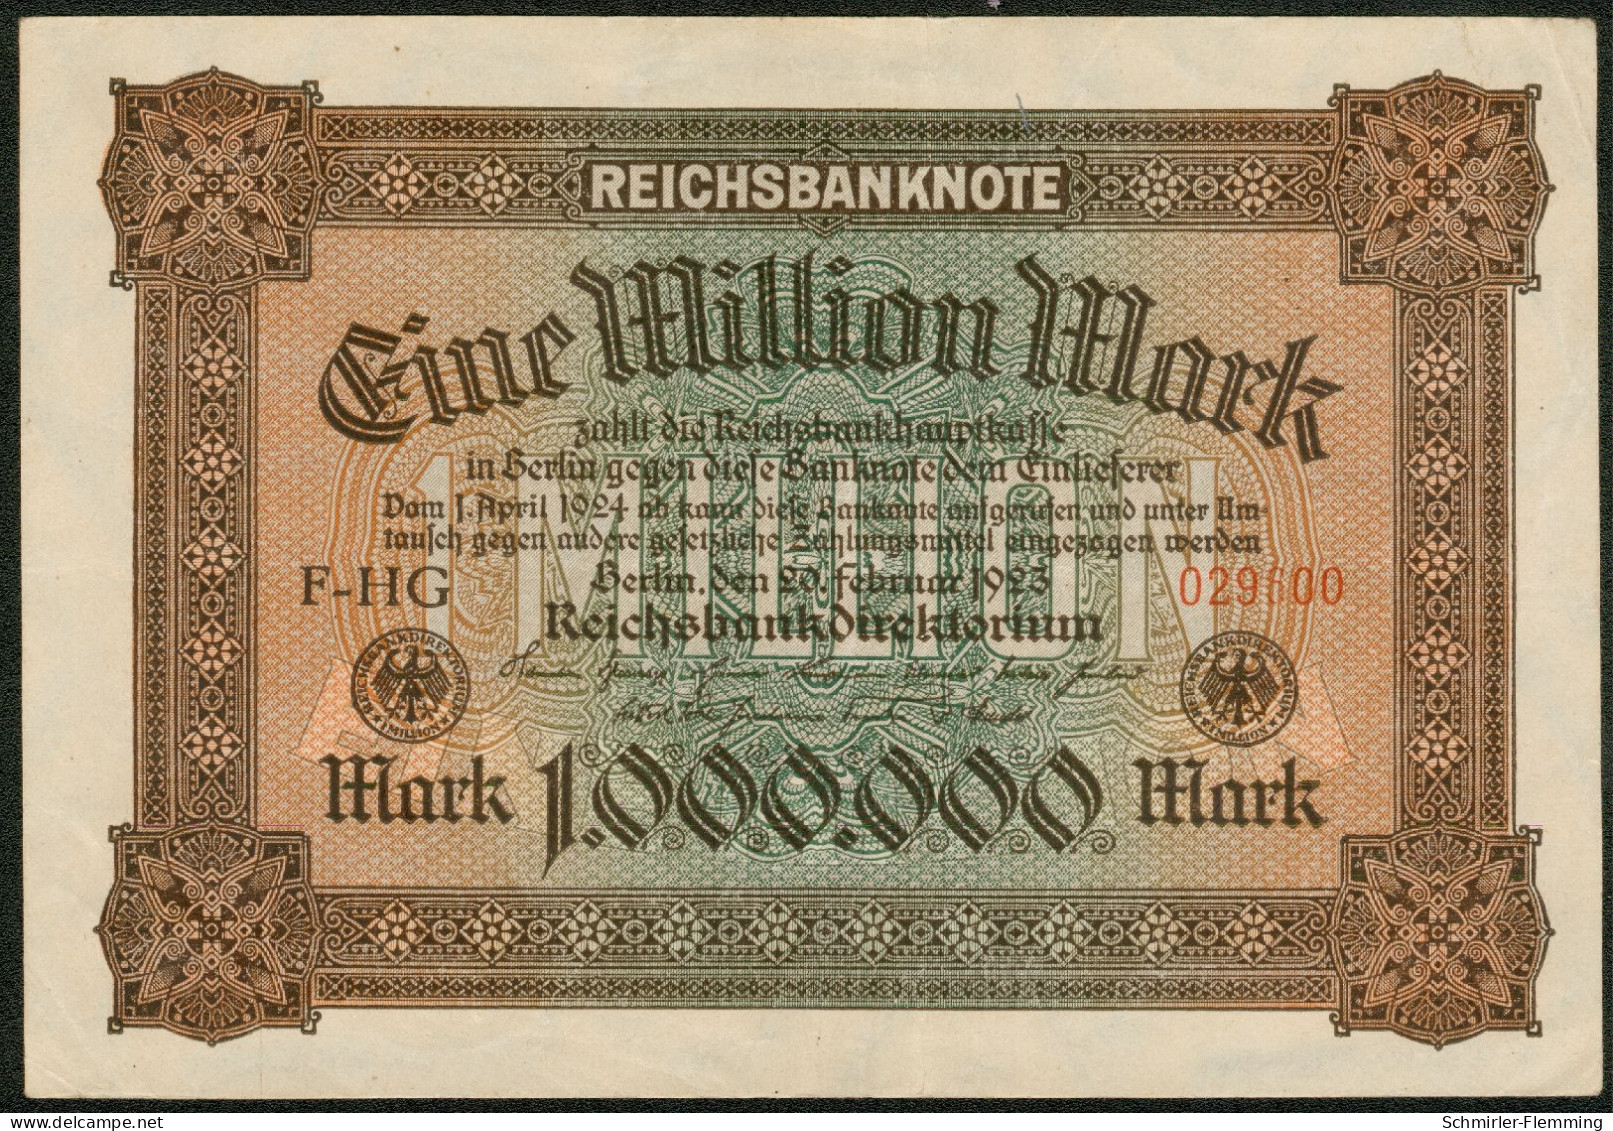 Deutsches Reich 1 Million Mark 20. Feb. 1923 Serie F-HG Rote Kenn Nr.029600(6stellig) KM#86 A, II - 1 Miljoen Mark